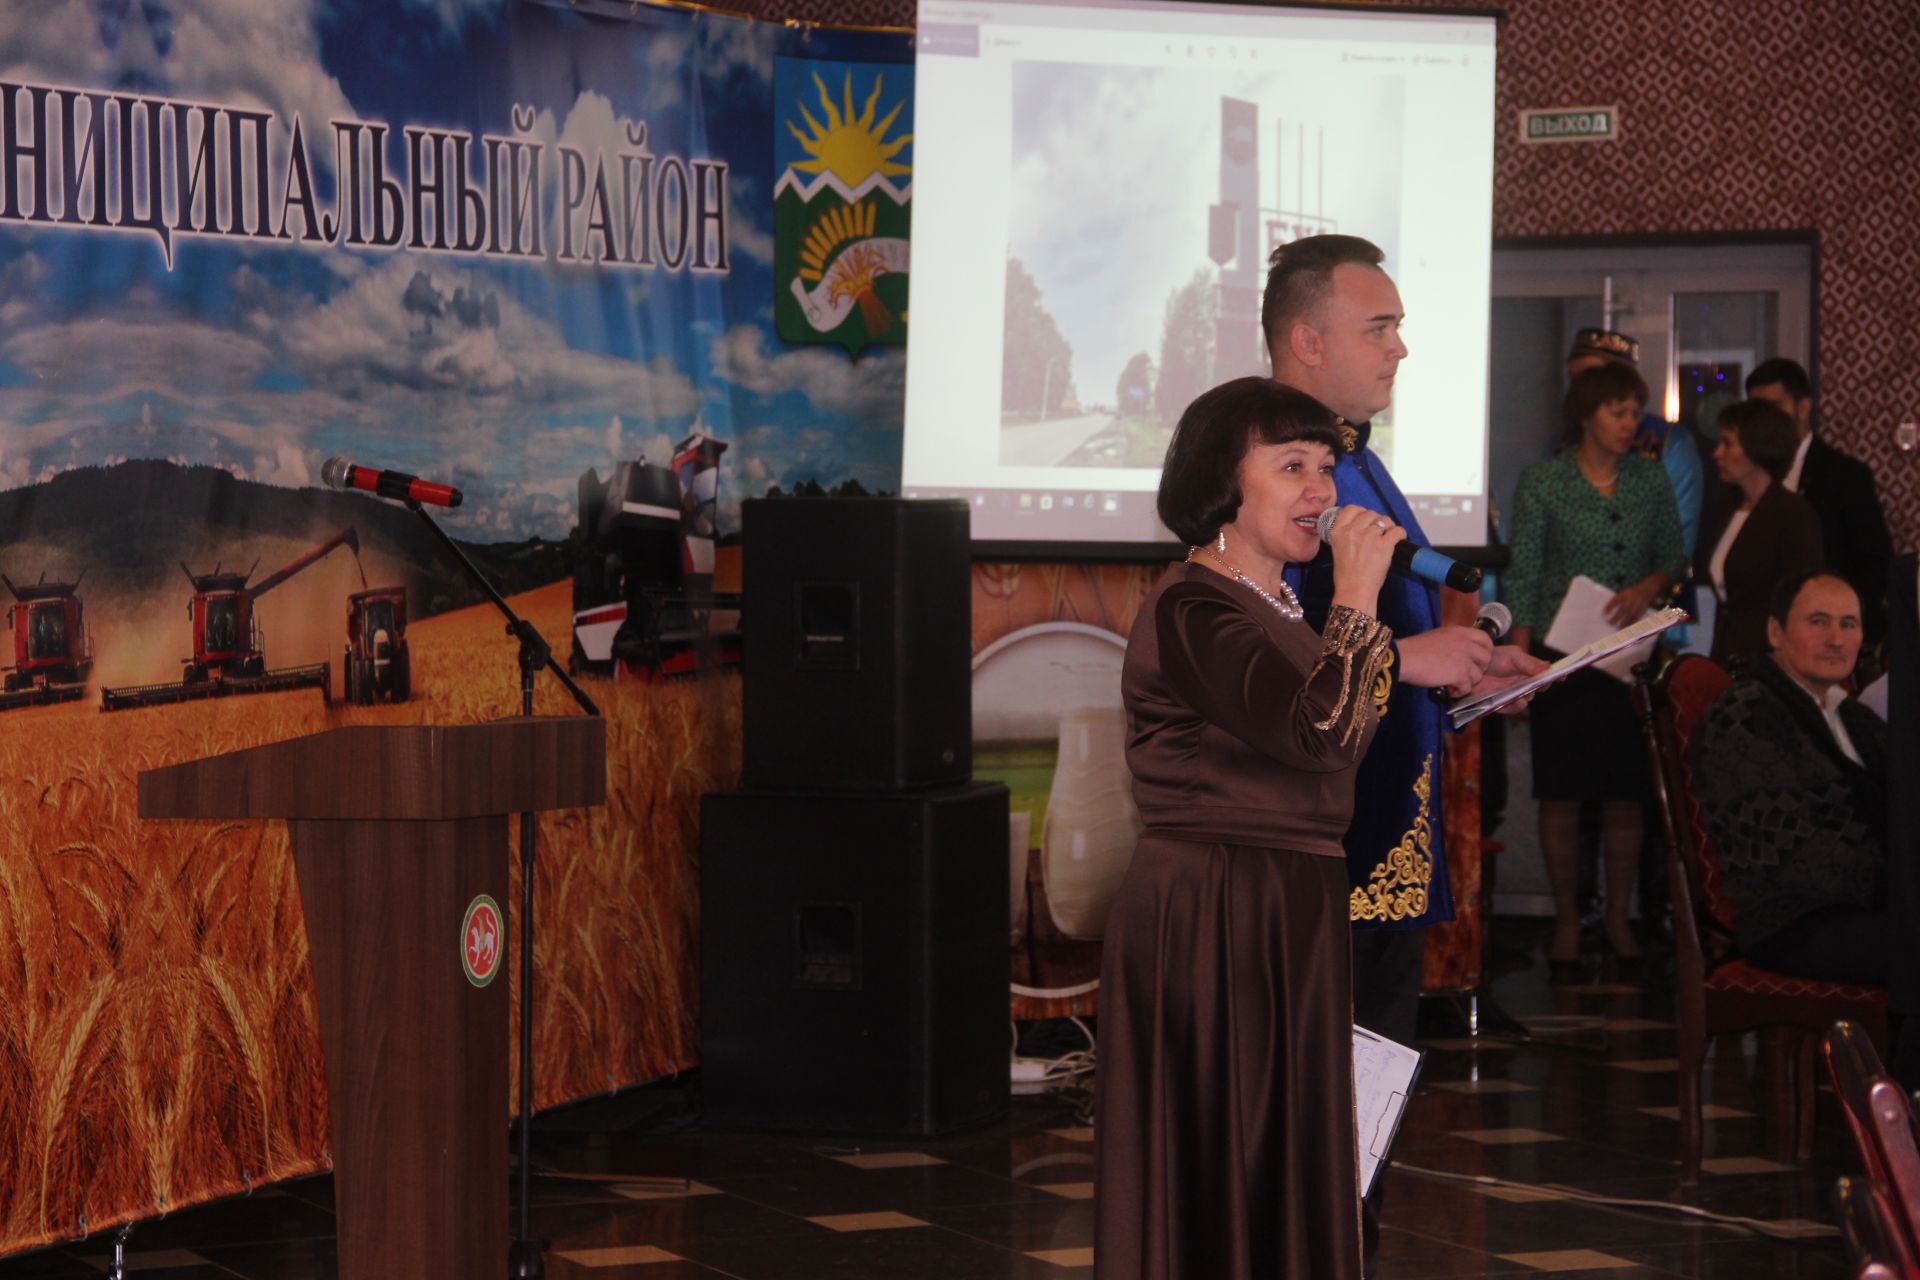 В Буинском районе сегодня чествовали передовиков сельского хозяйства (фоторепортаж)